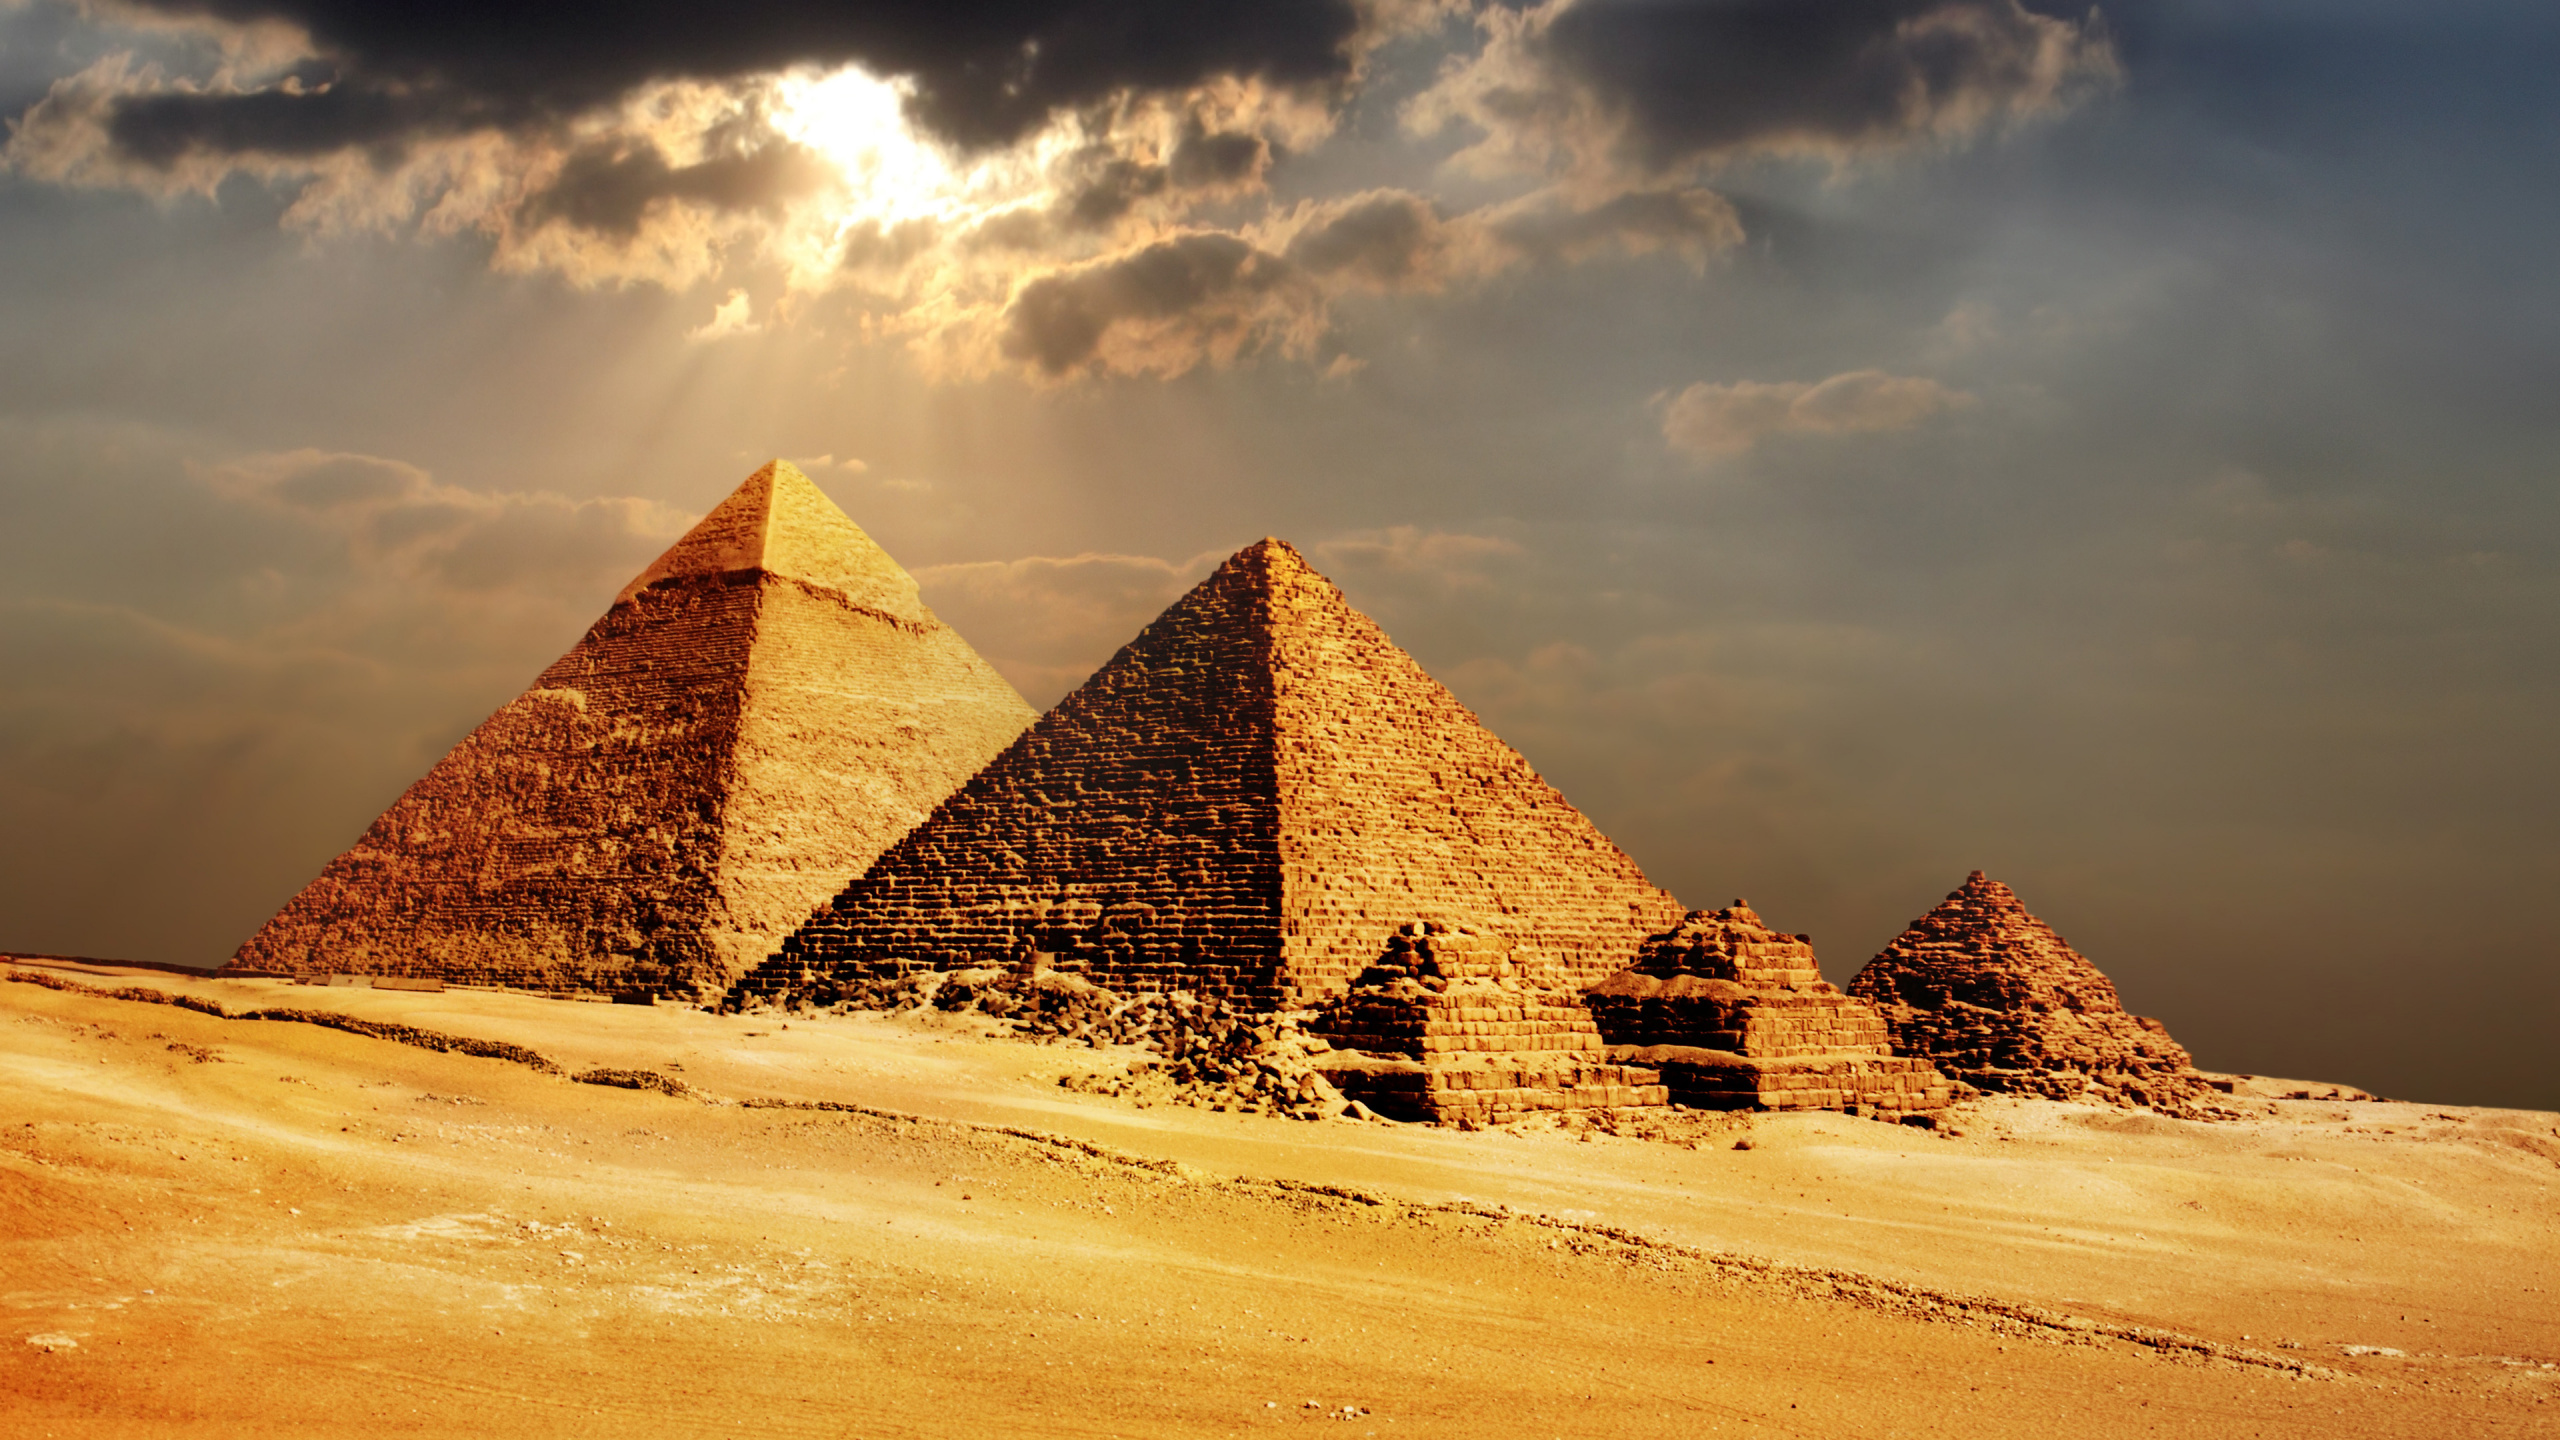 埃及金字塔, 金字塔, 纪念碑, 古代历史, 历史站 壁纸 2560x1440 允许